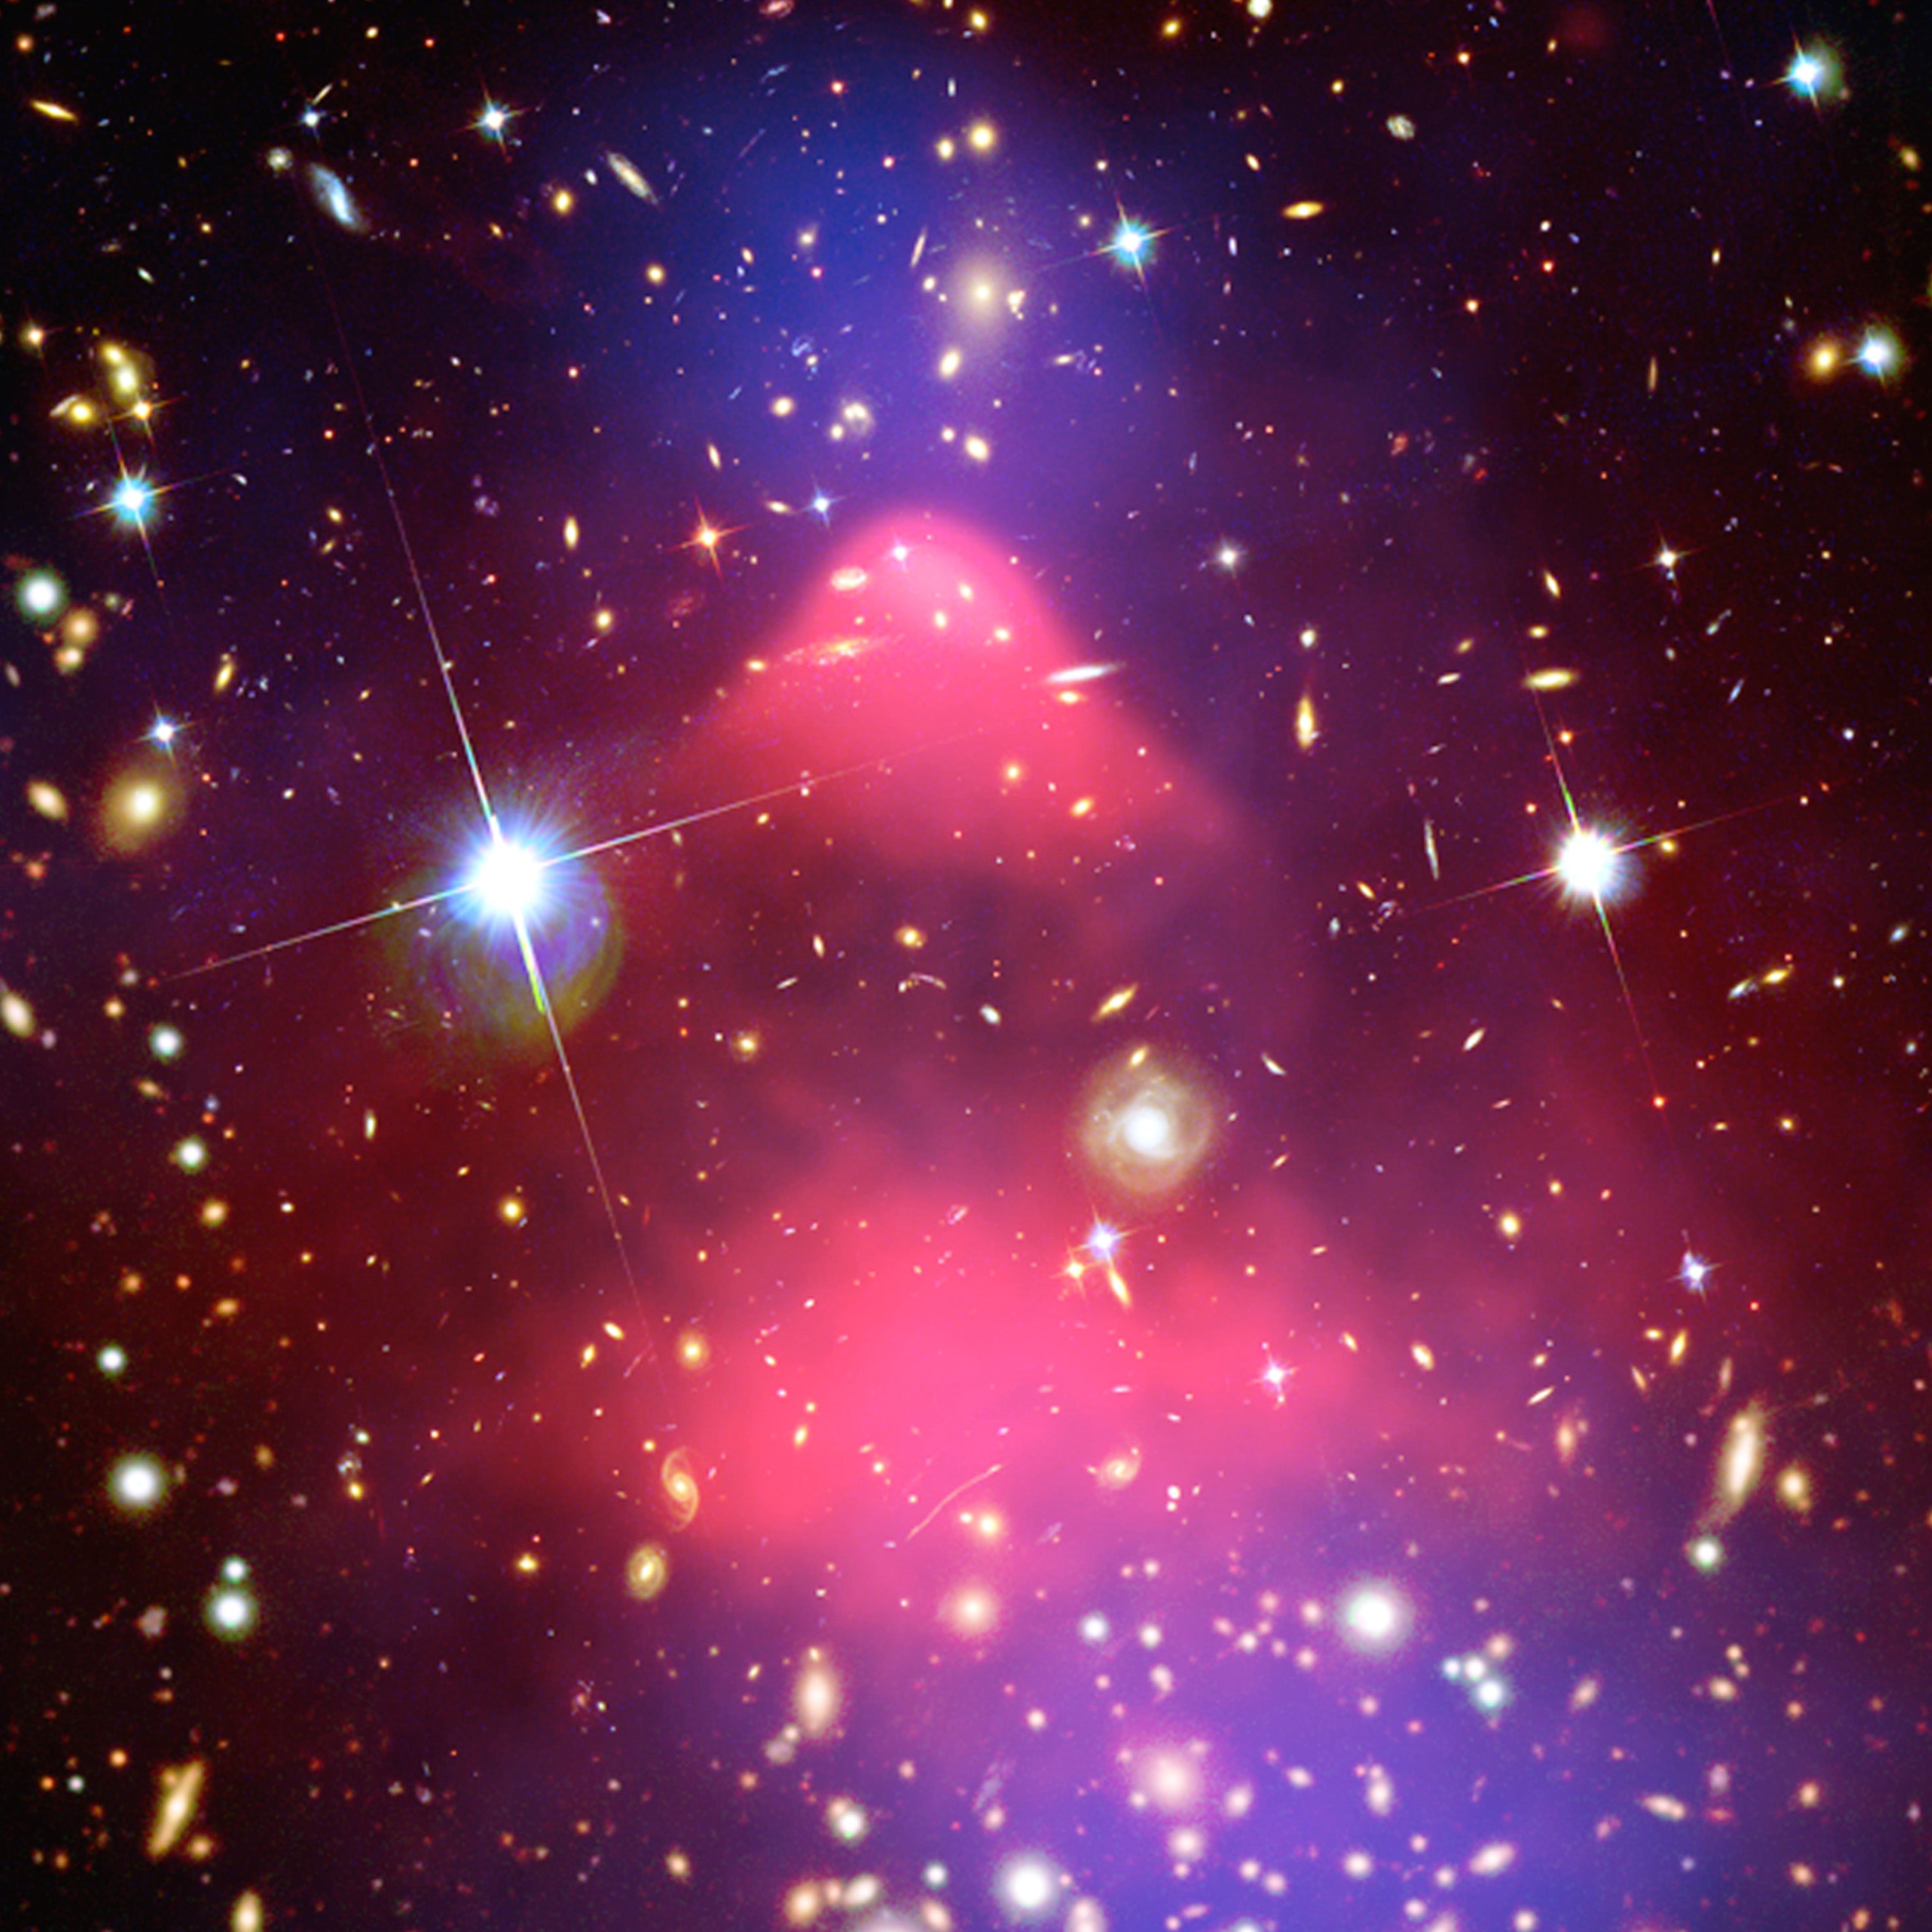 Dark Matter of Bullet Cluster